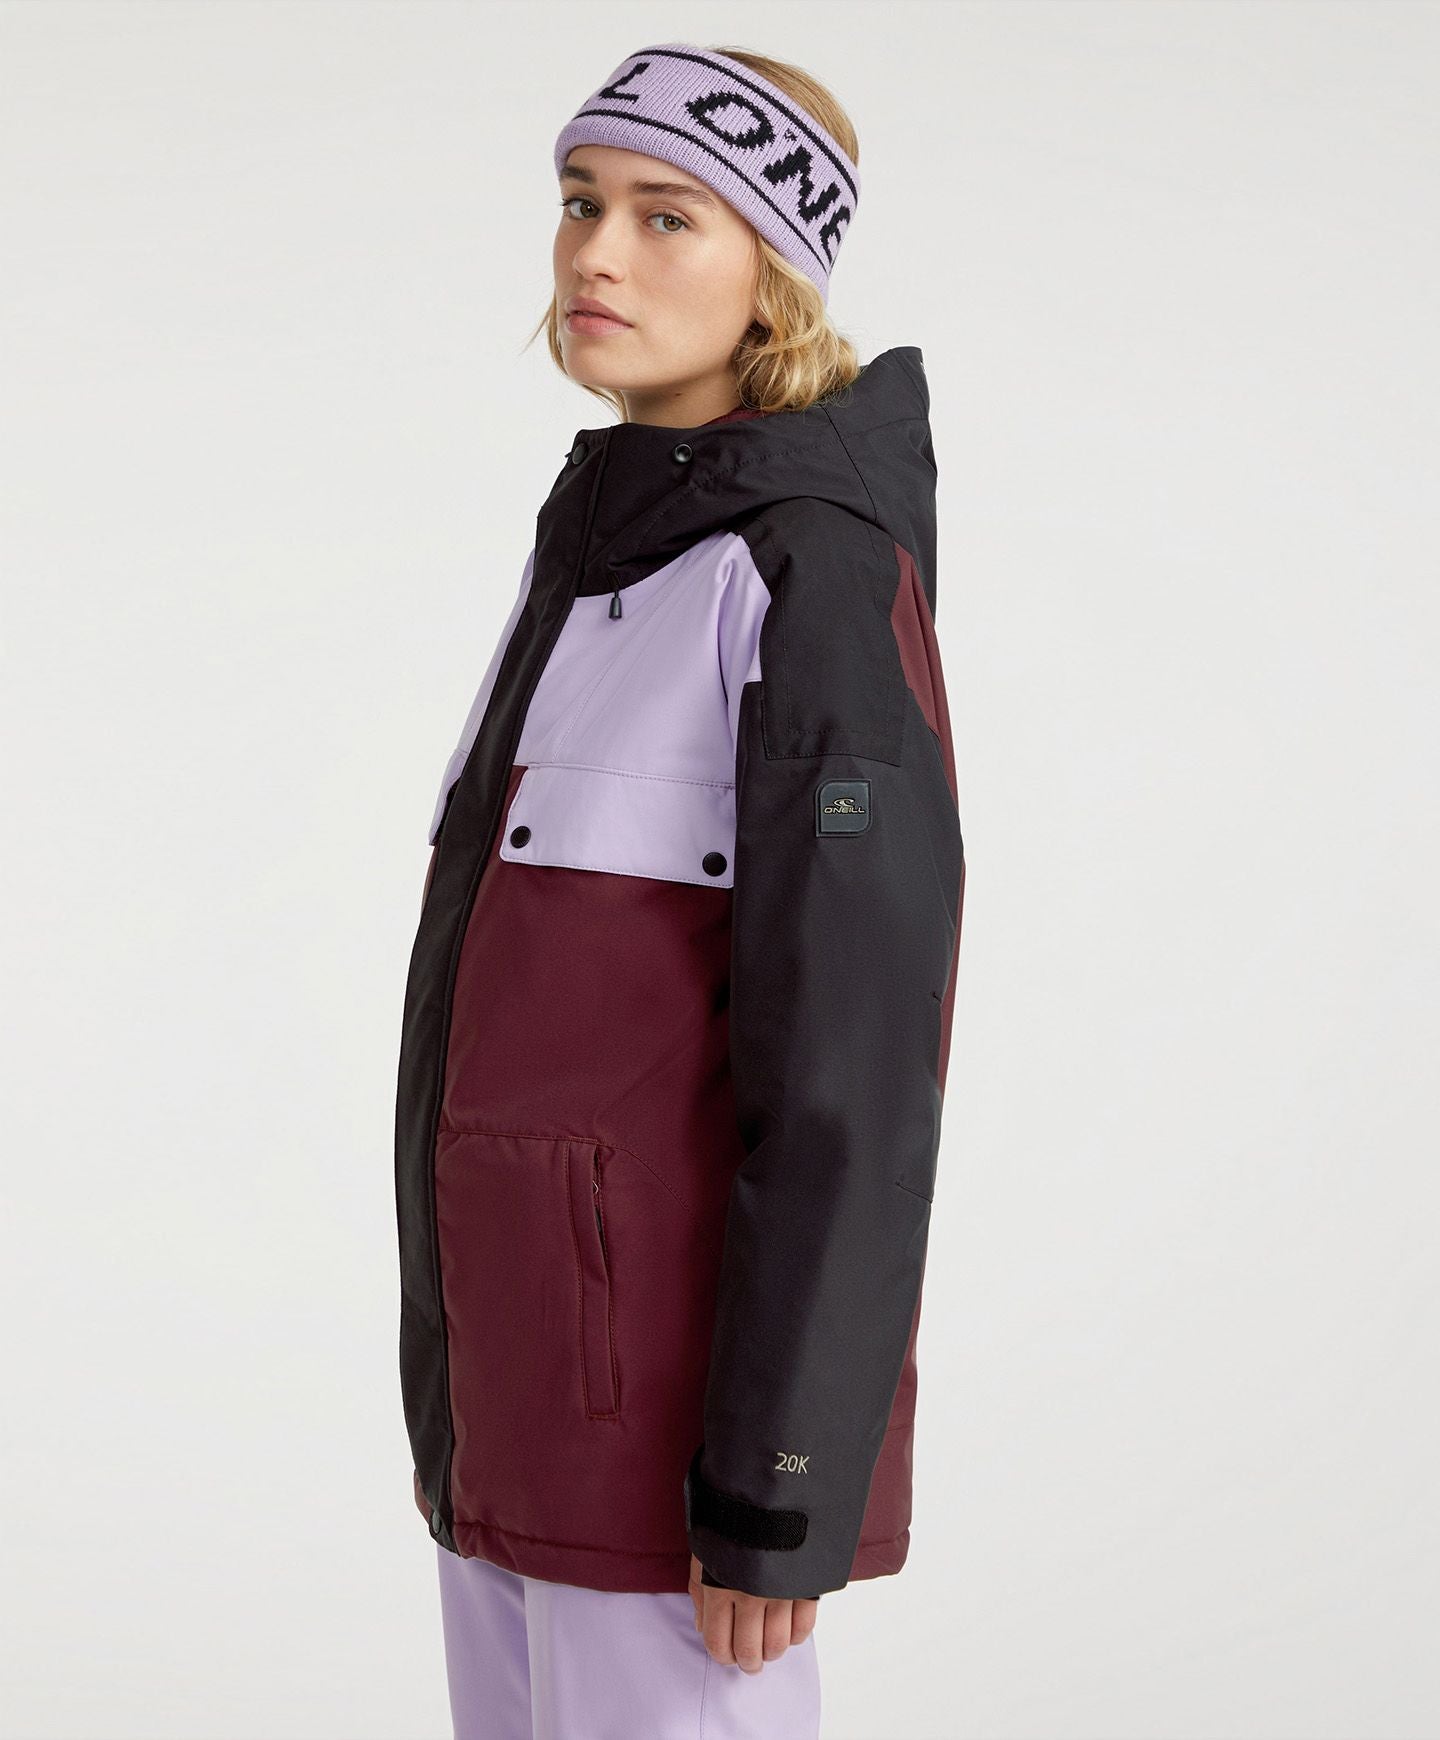 Women's O'Riginals Snow Jacket - Black Out Colour Block